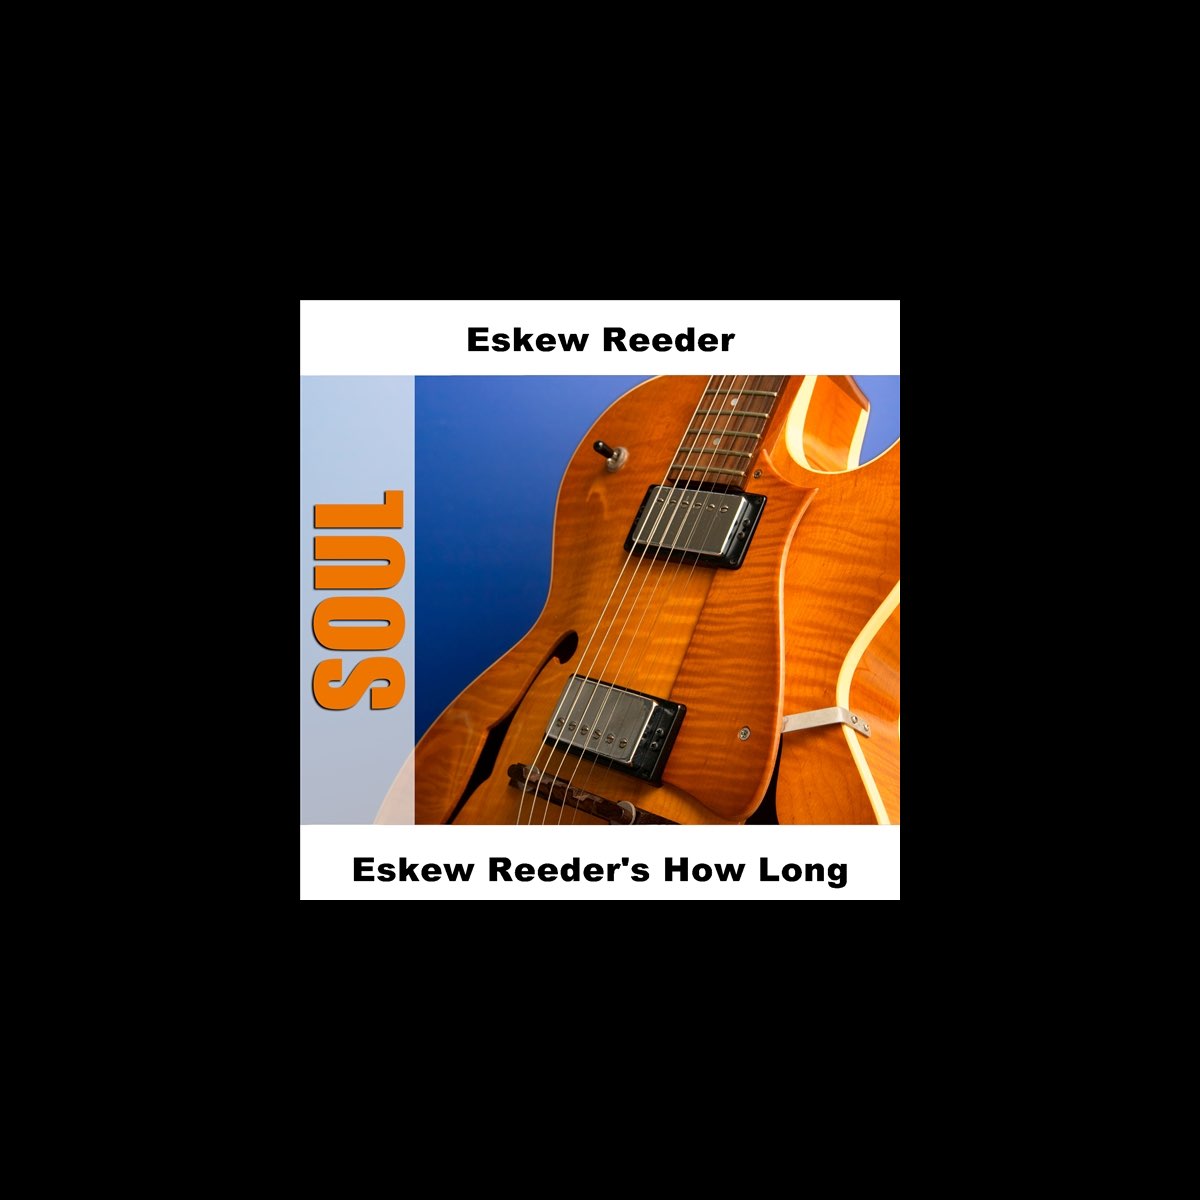 ‎Eskew Reeder's How Long by Eskew Reeder on Apple Music